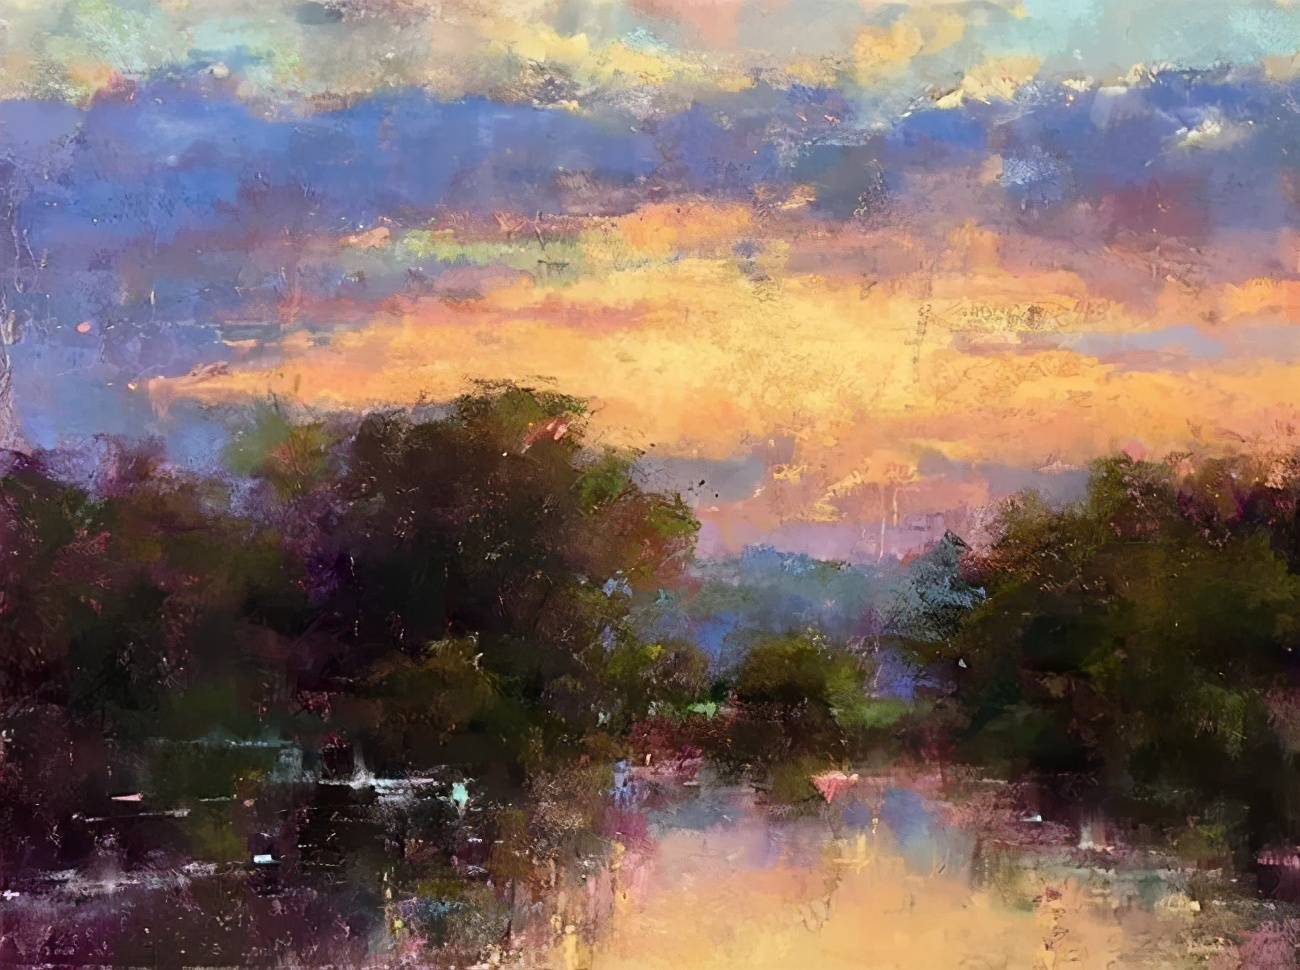 美国艺术家阿奎尔 柔和的风景油画,温馨美好!